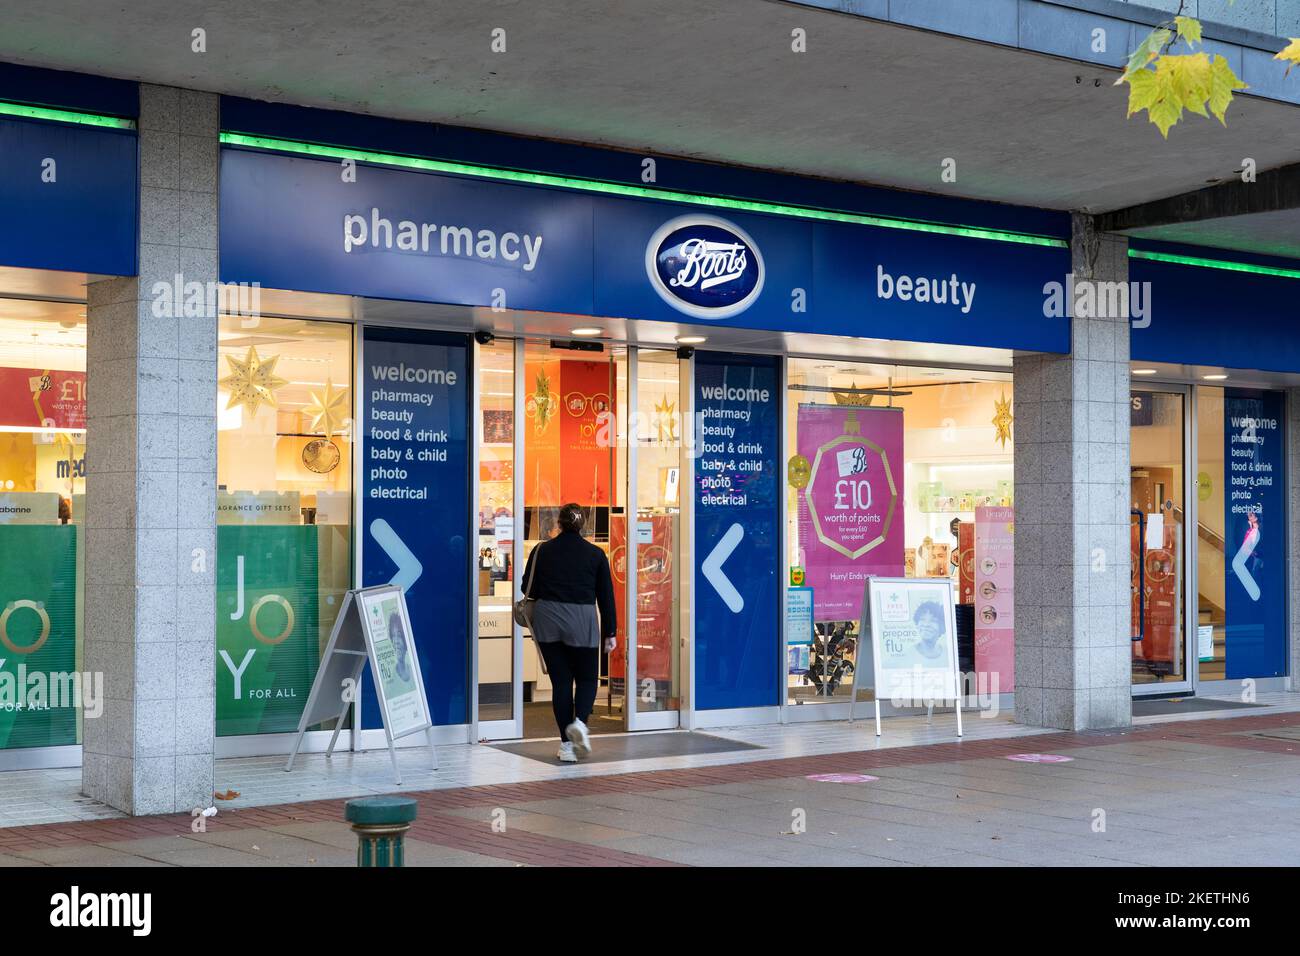 Le client entre dans une pharmacie Boots High Street sur Mell Square, Solihull. Concept: Shopping dans les rues hautes, déclin de la rue haute, commerce de détail Banque D'Images